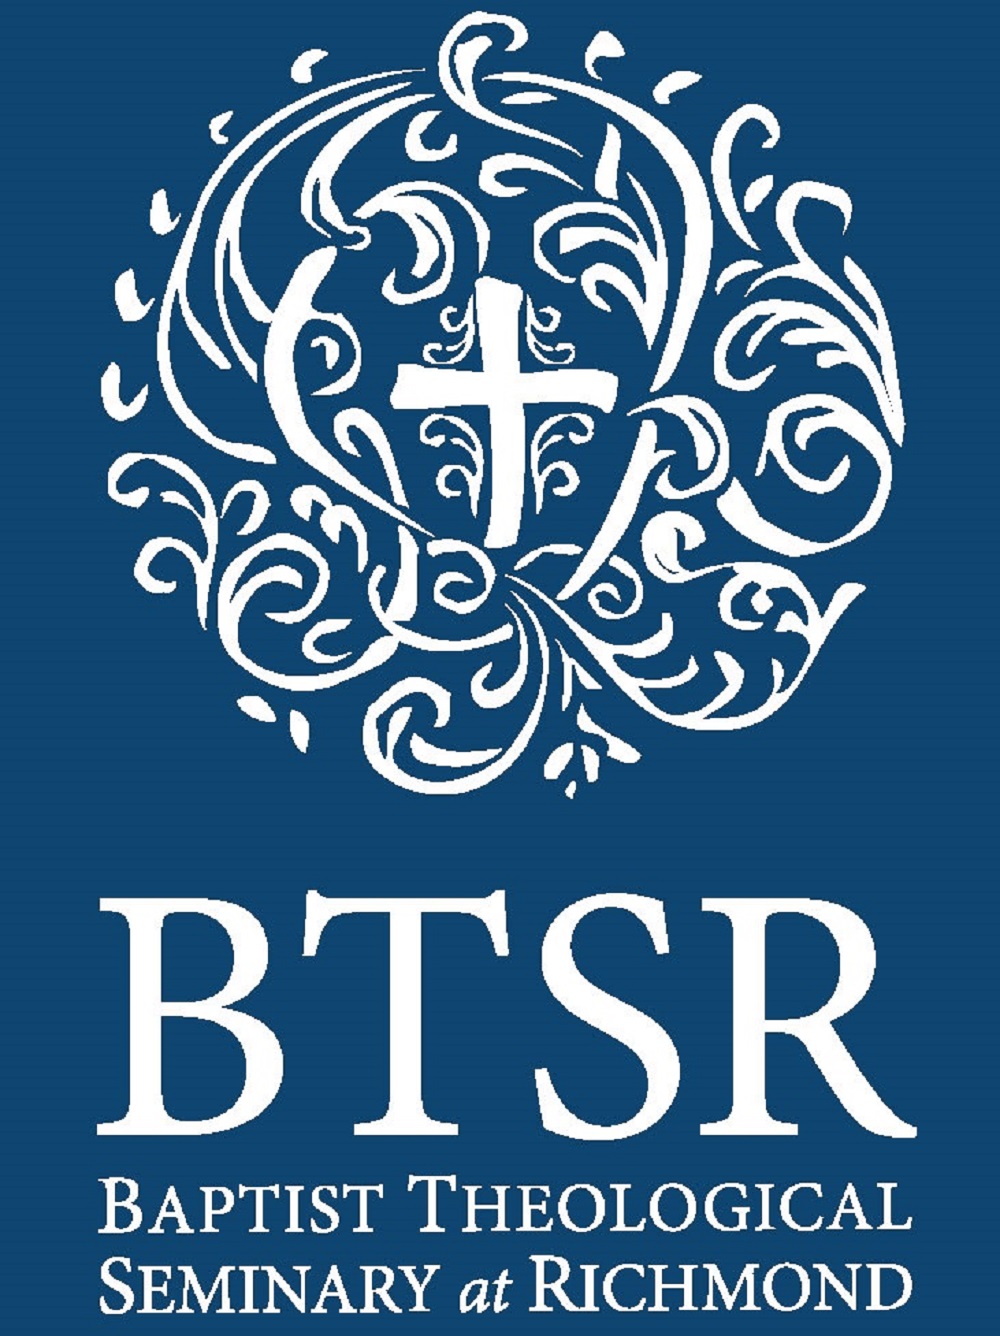 btsr-logo-white-bluebgcroplarge